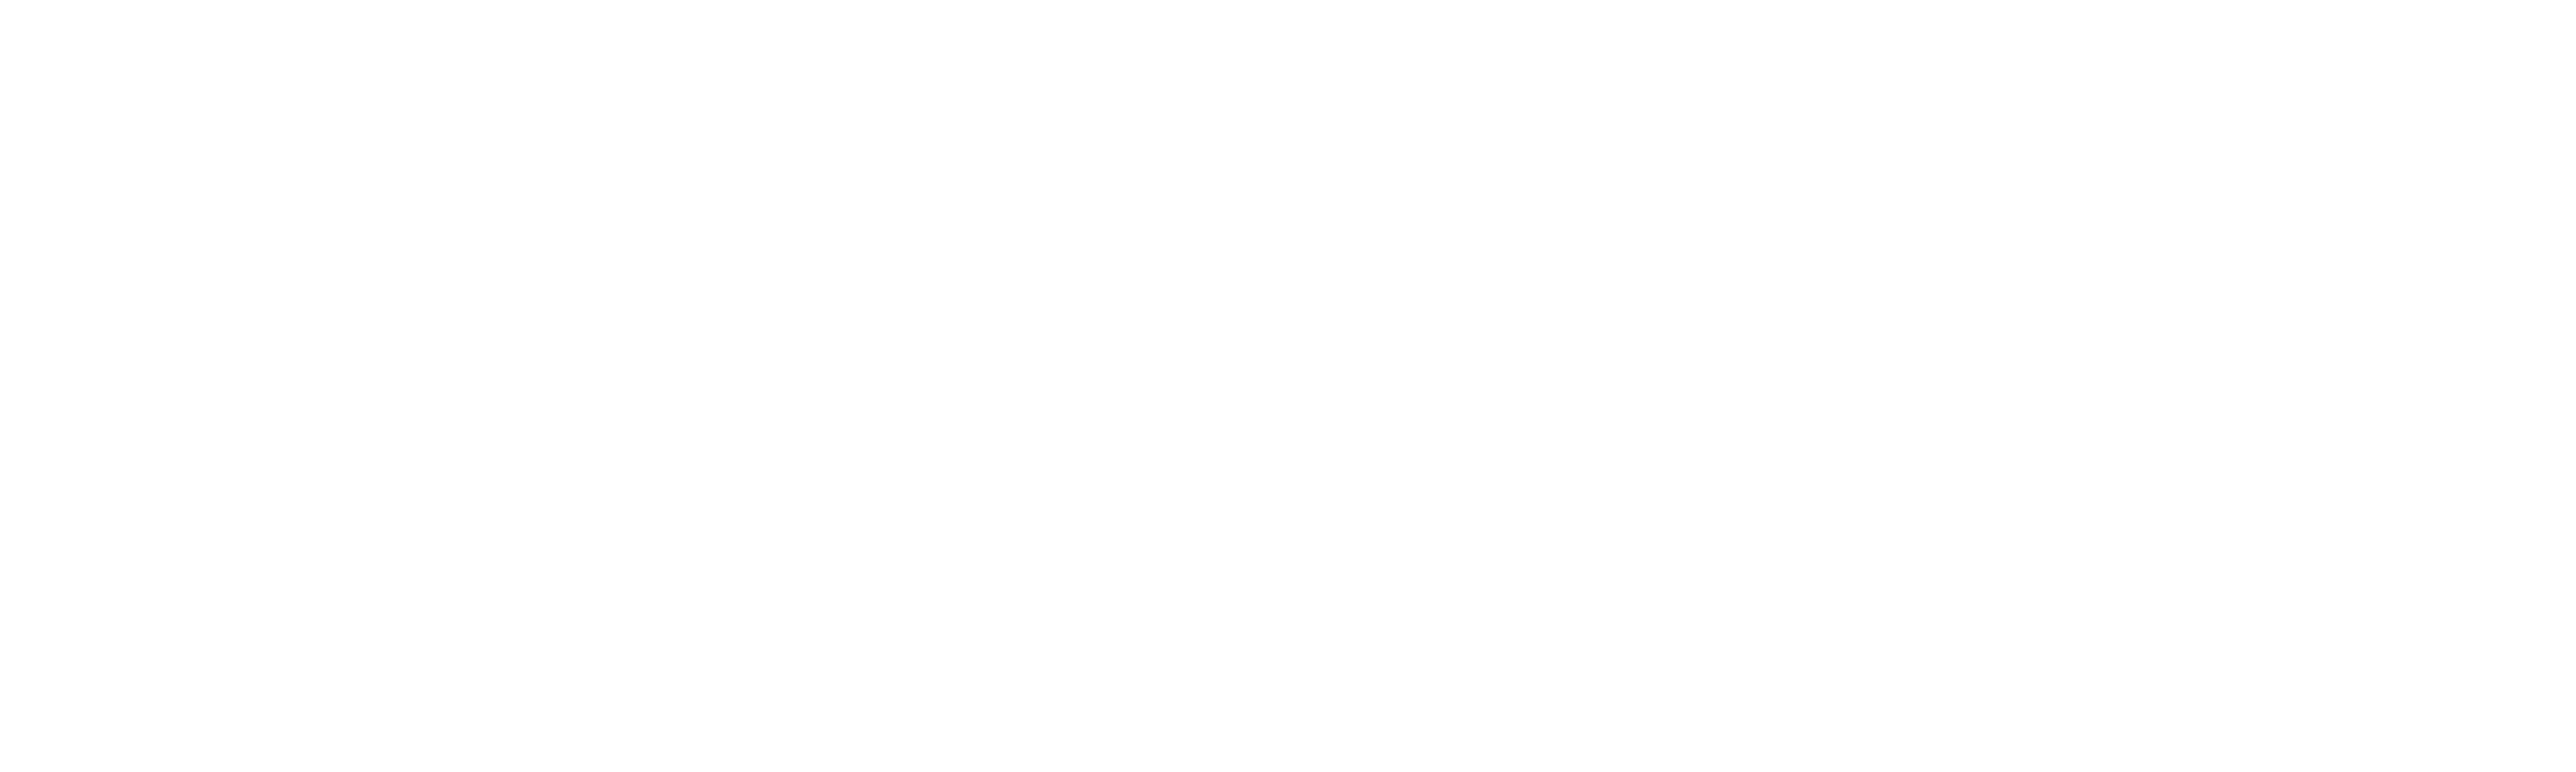 jacobeo21-22